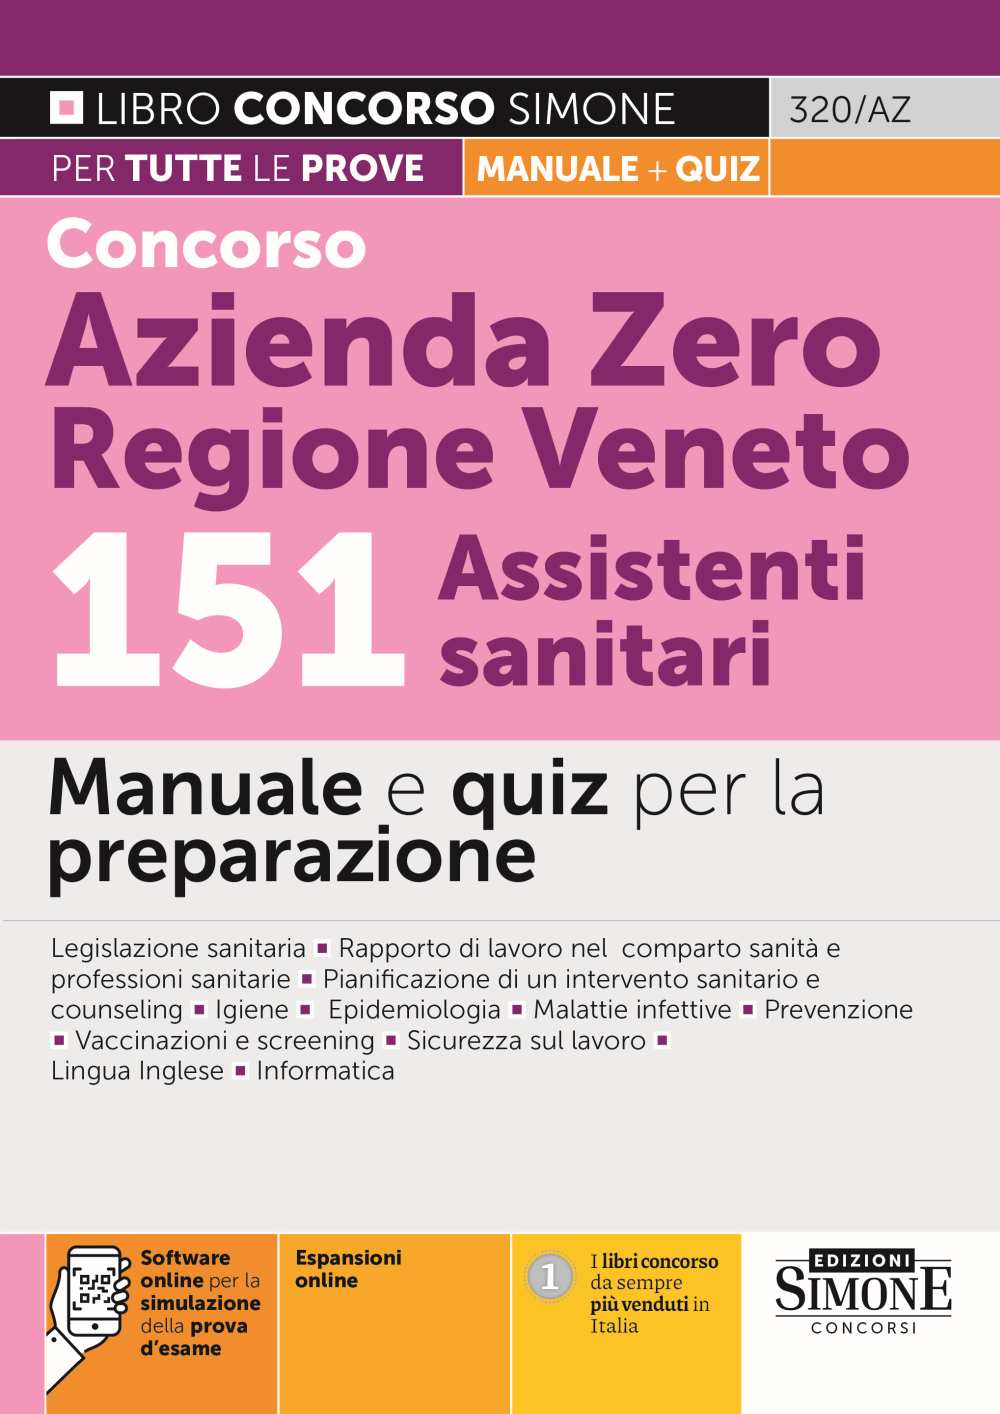 Manaule Concorso Azienda Zero Regione Veneto 151 Assistenti sanitari